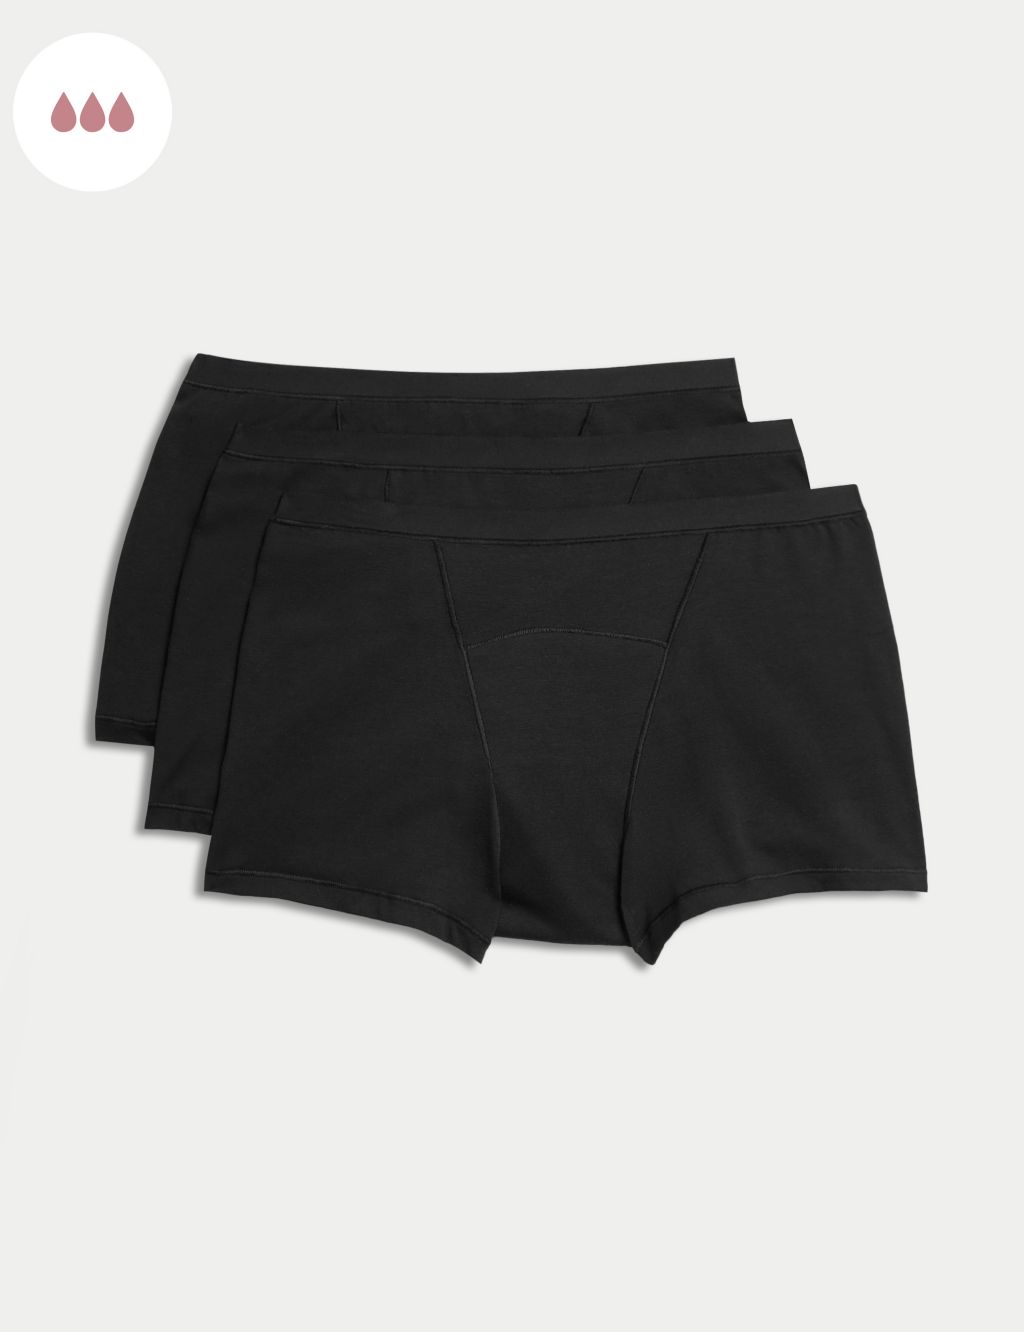 Knicker Shorts, Lingerie